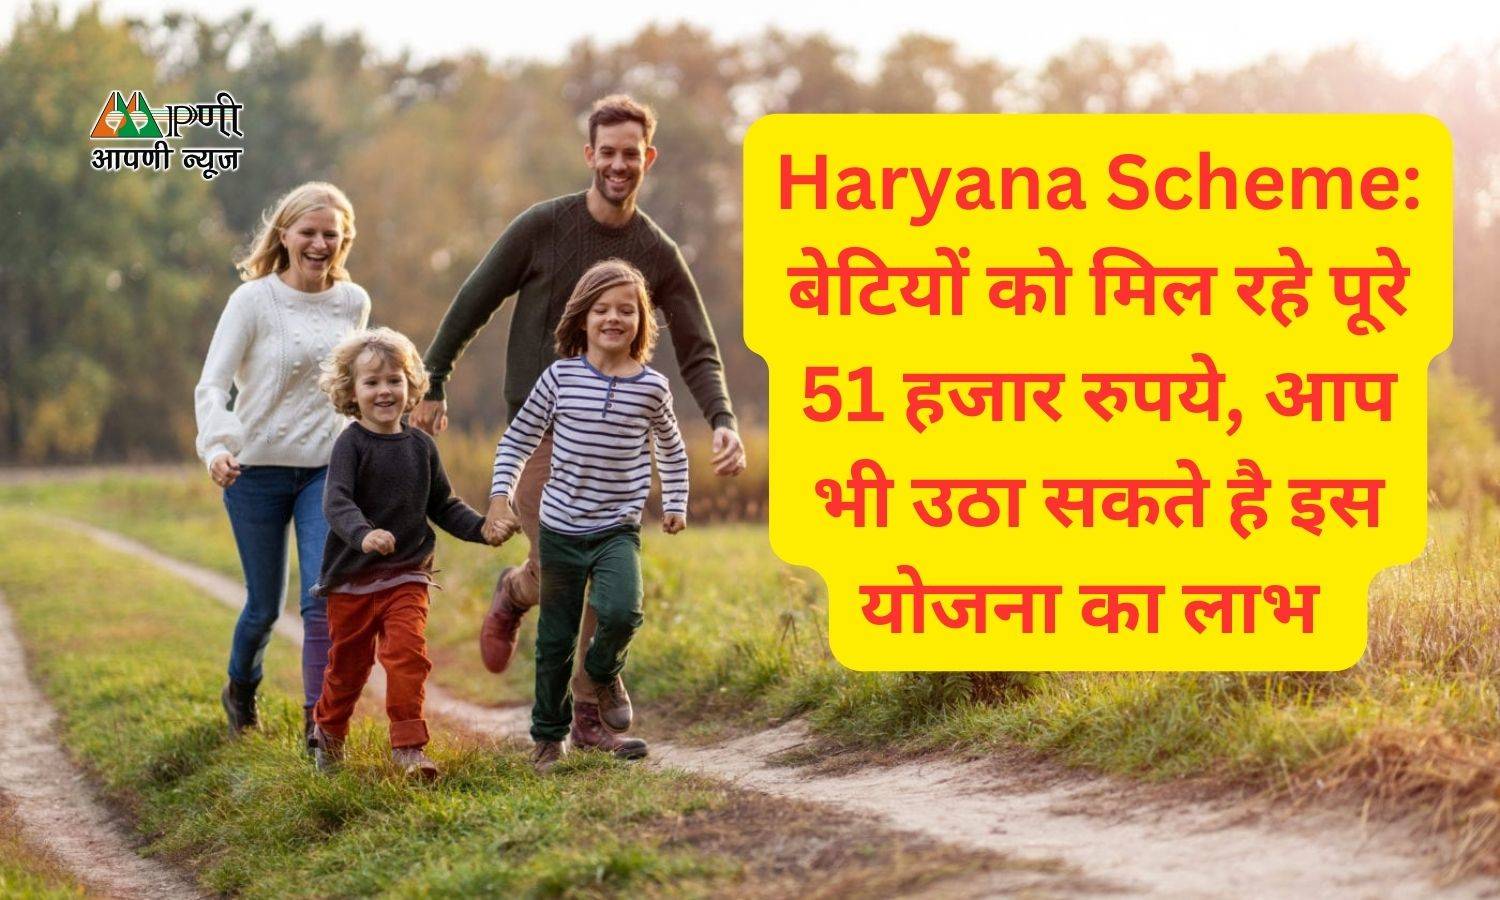 Haryana Scheme: बेटियों को मिल रहे पूरे 51 हजार रुपये, आप भी उठा सकते है इस योजना का लाभ